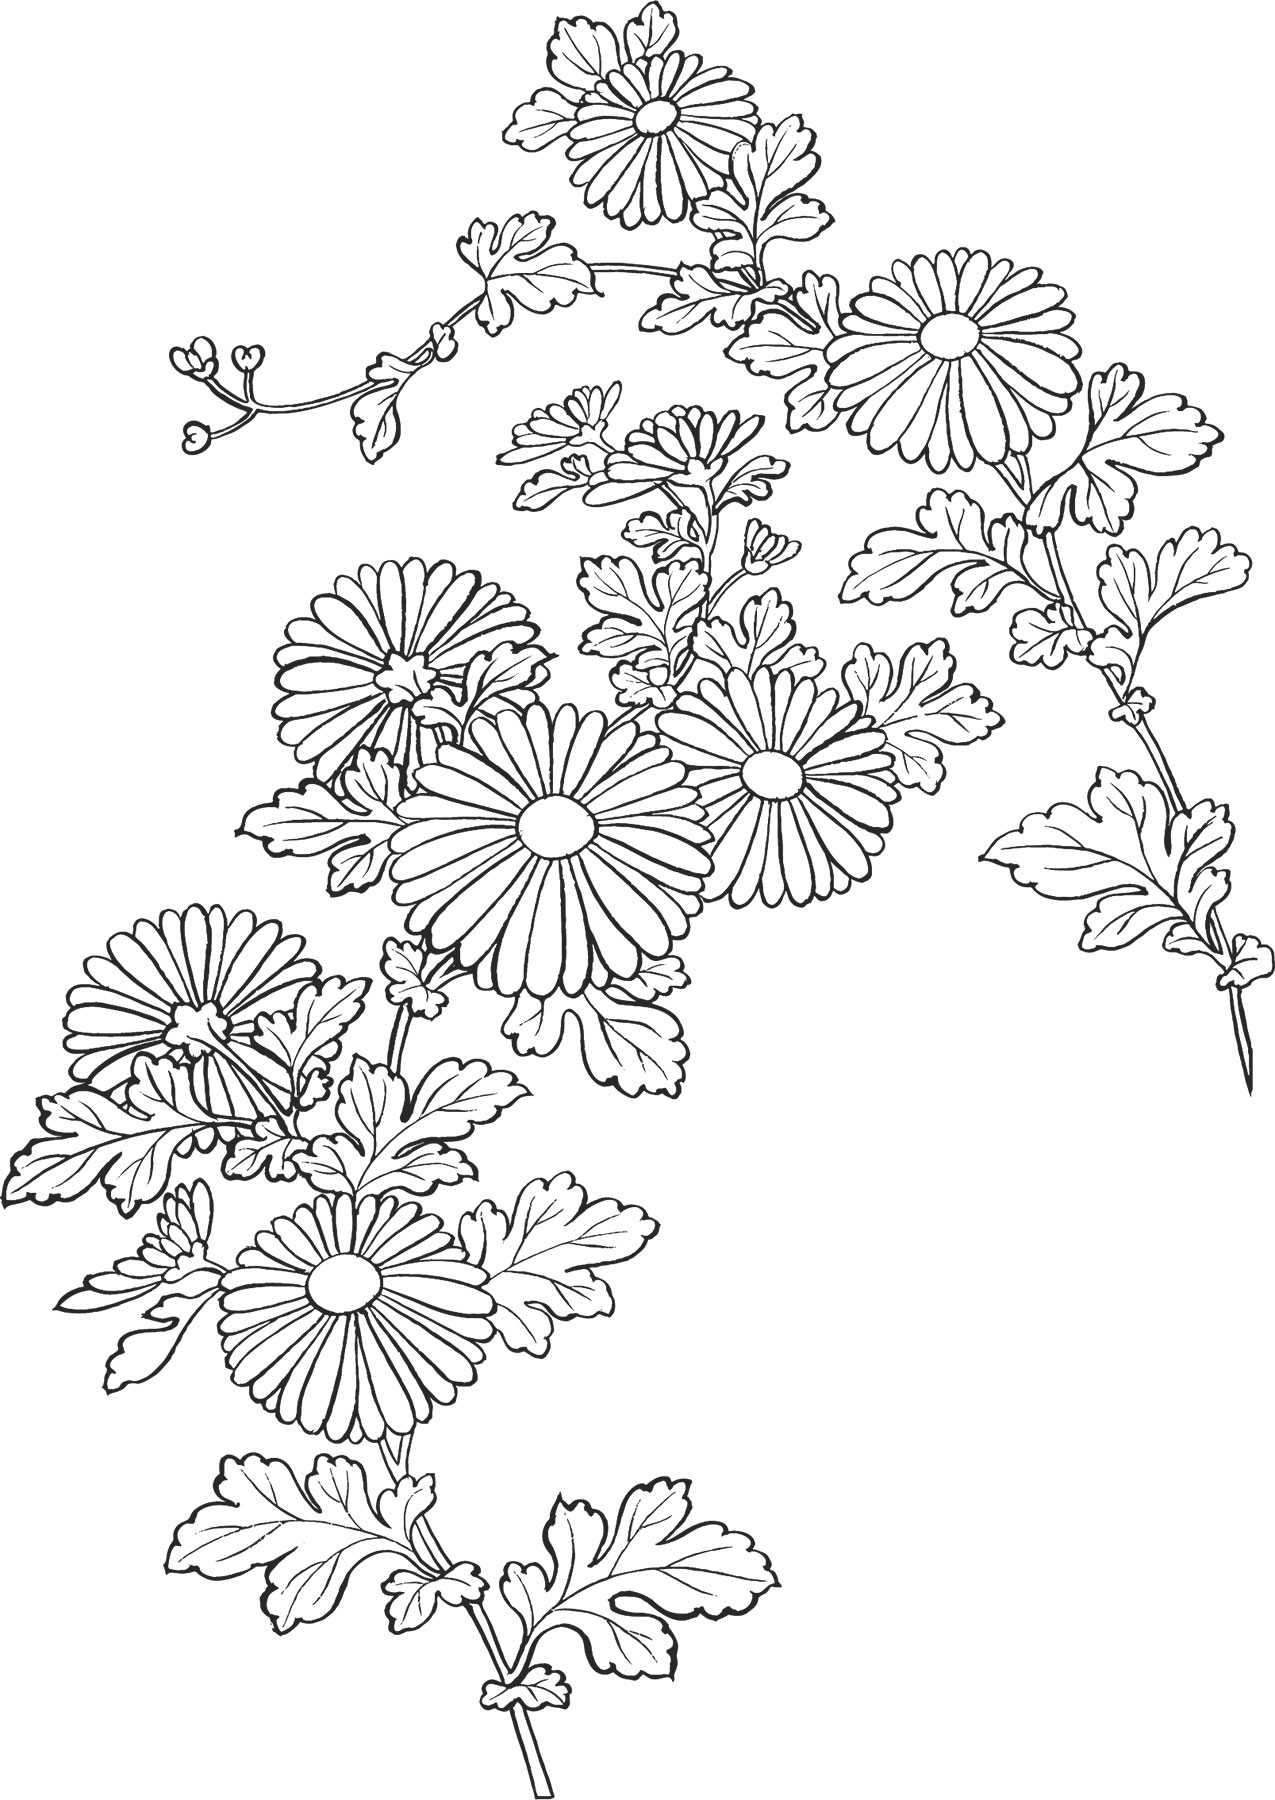 白黒の花のイラスト-白黒・菊・茎葉